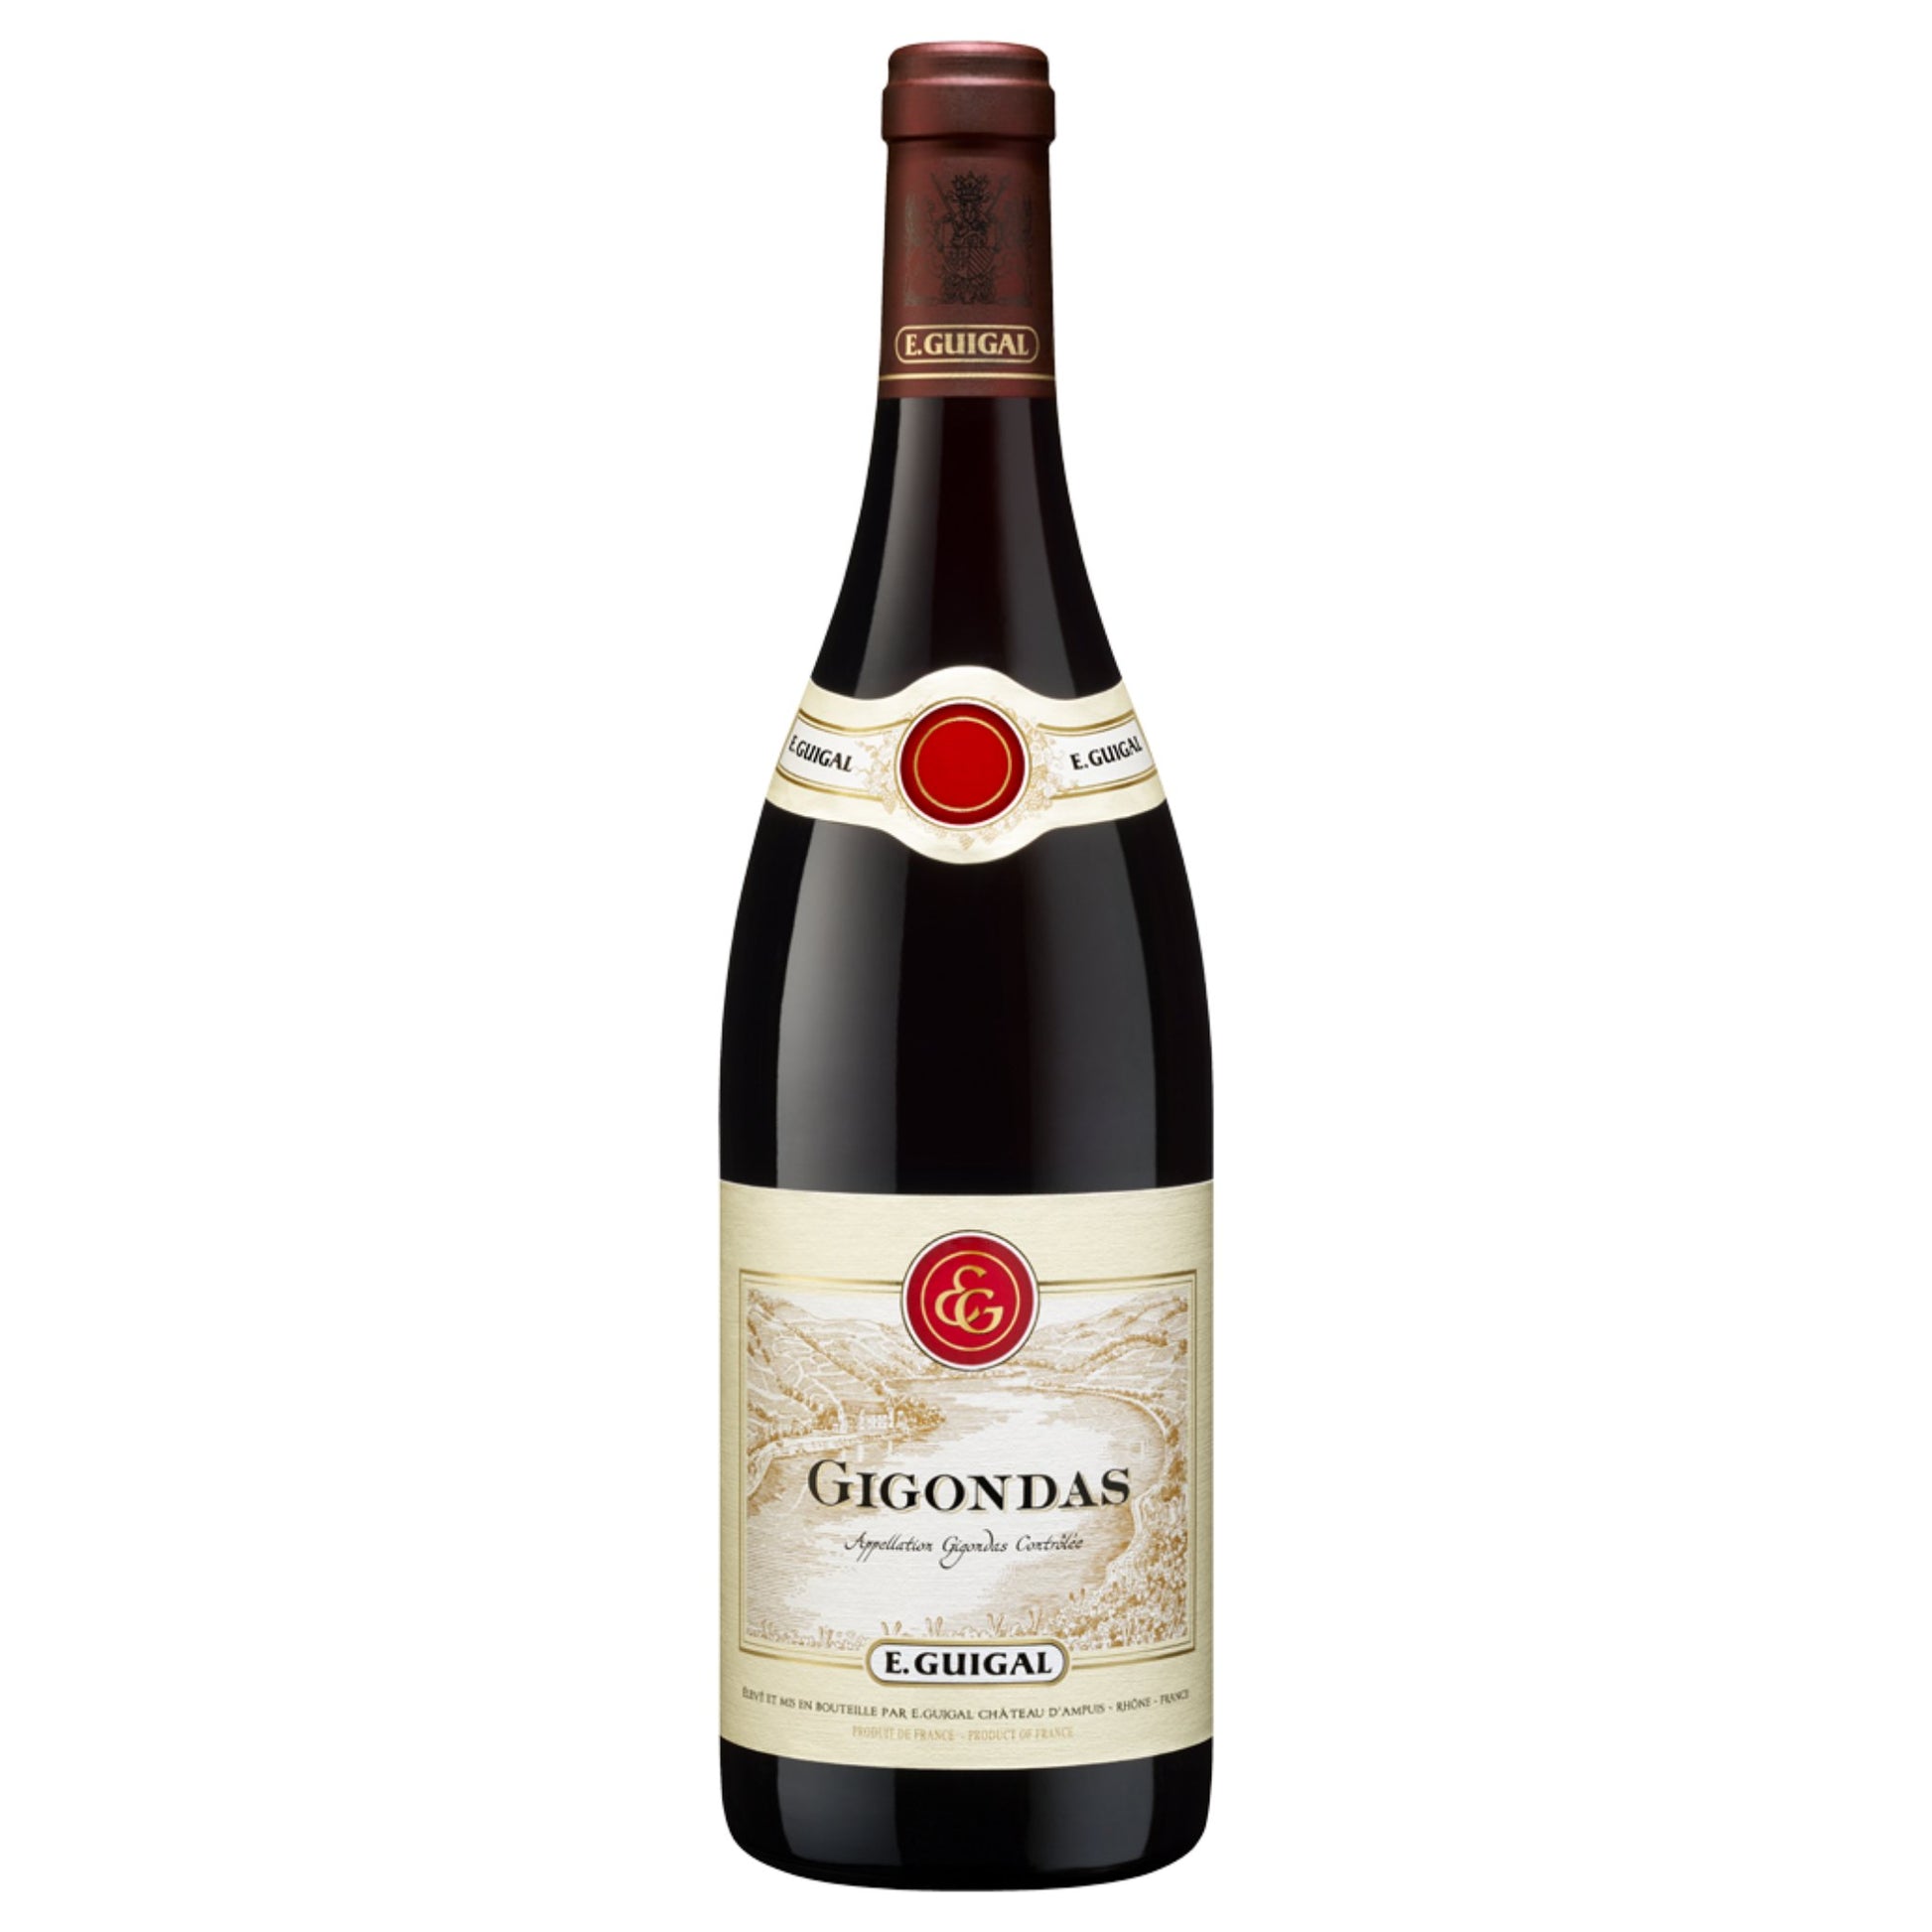 E. Guigal Gigondas Rouge - Grand Vin Pte Ltd